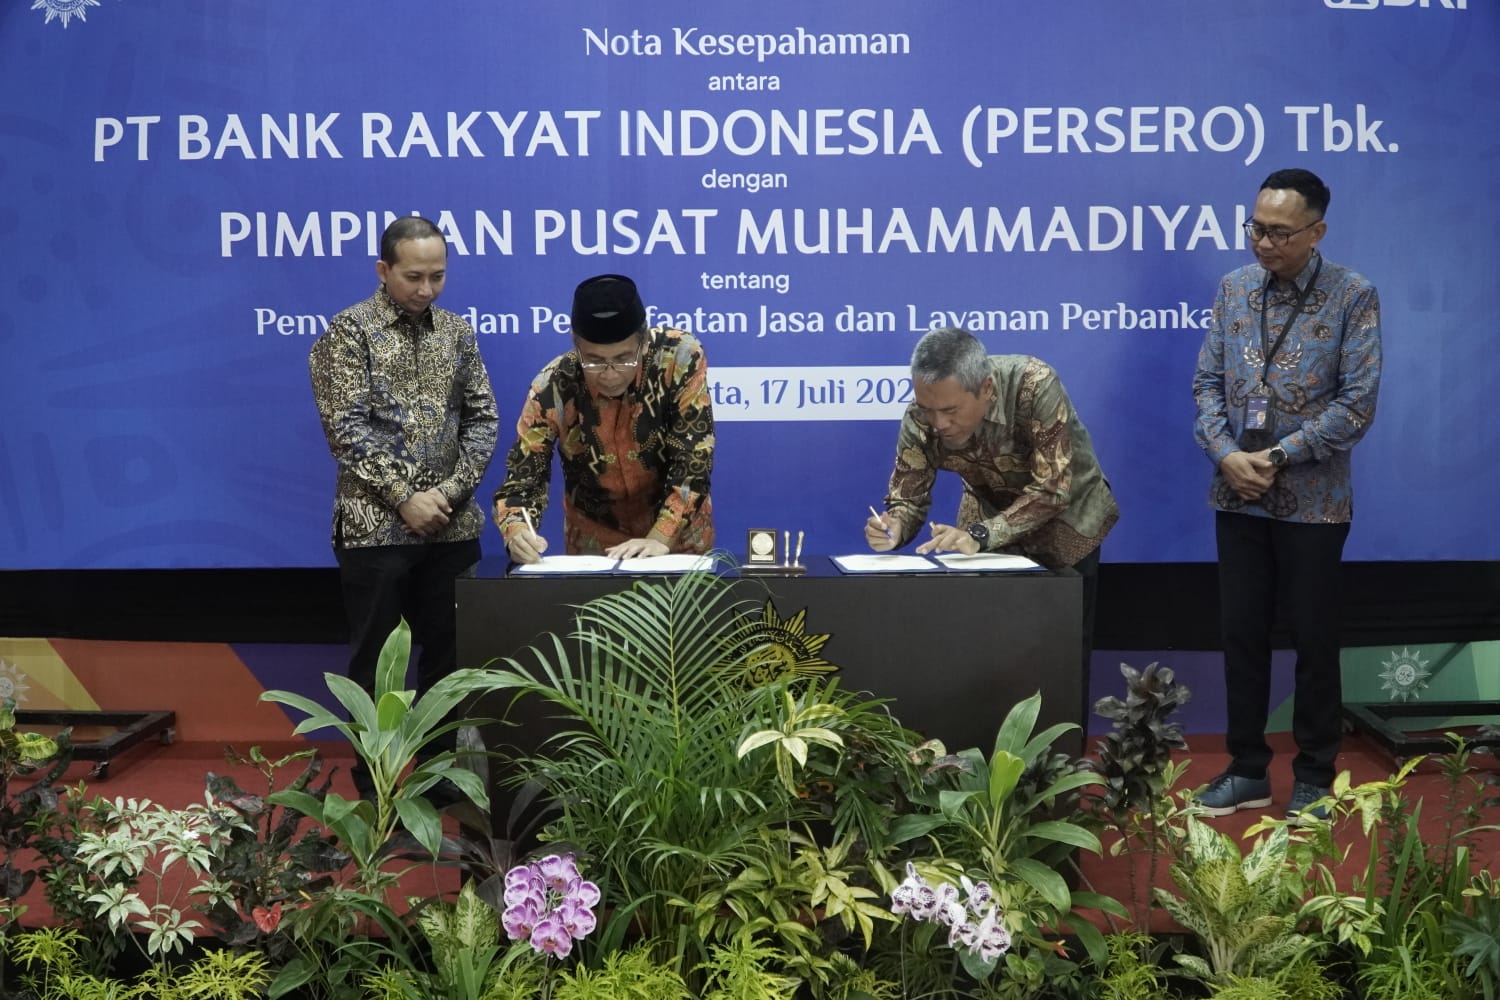 BRI menjalin sinergi dengan Pimpinan Pusat (PP) Muhammadiyah terkait penyediaan dan pemanfaatan jasa dan layanan perbankan.